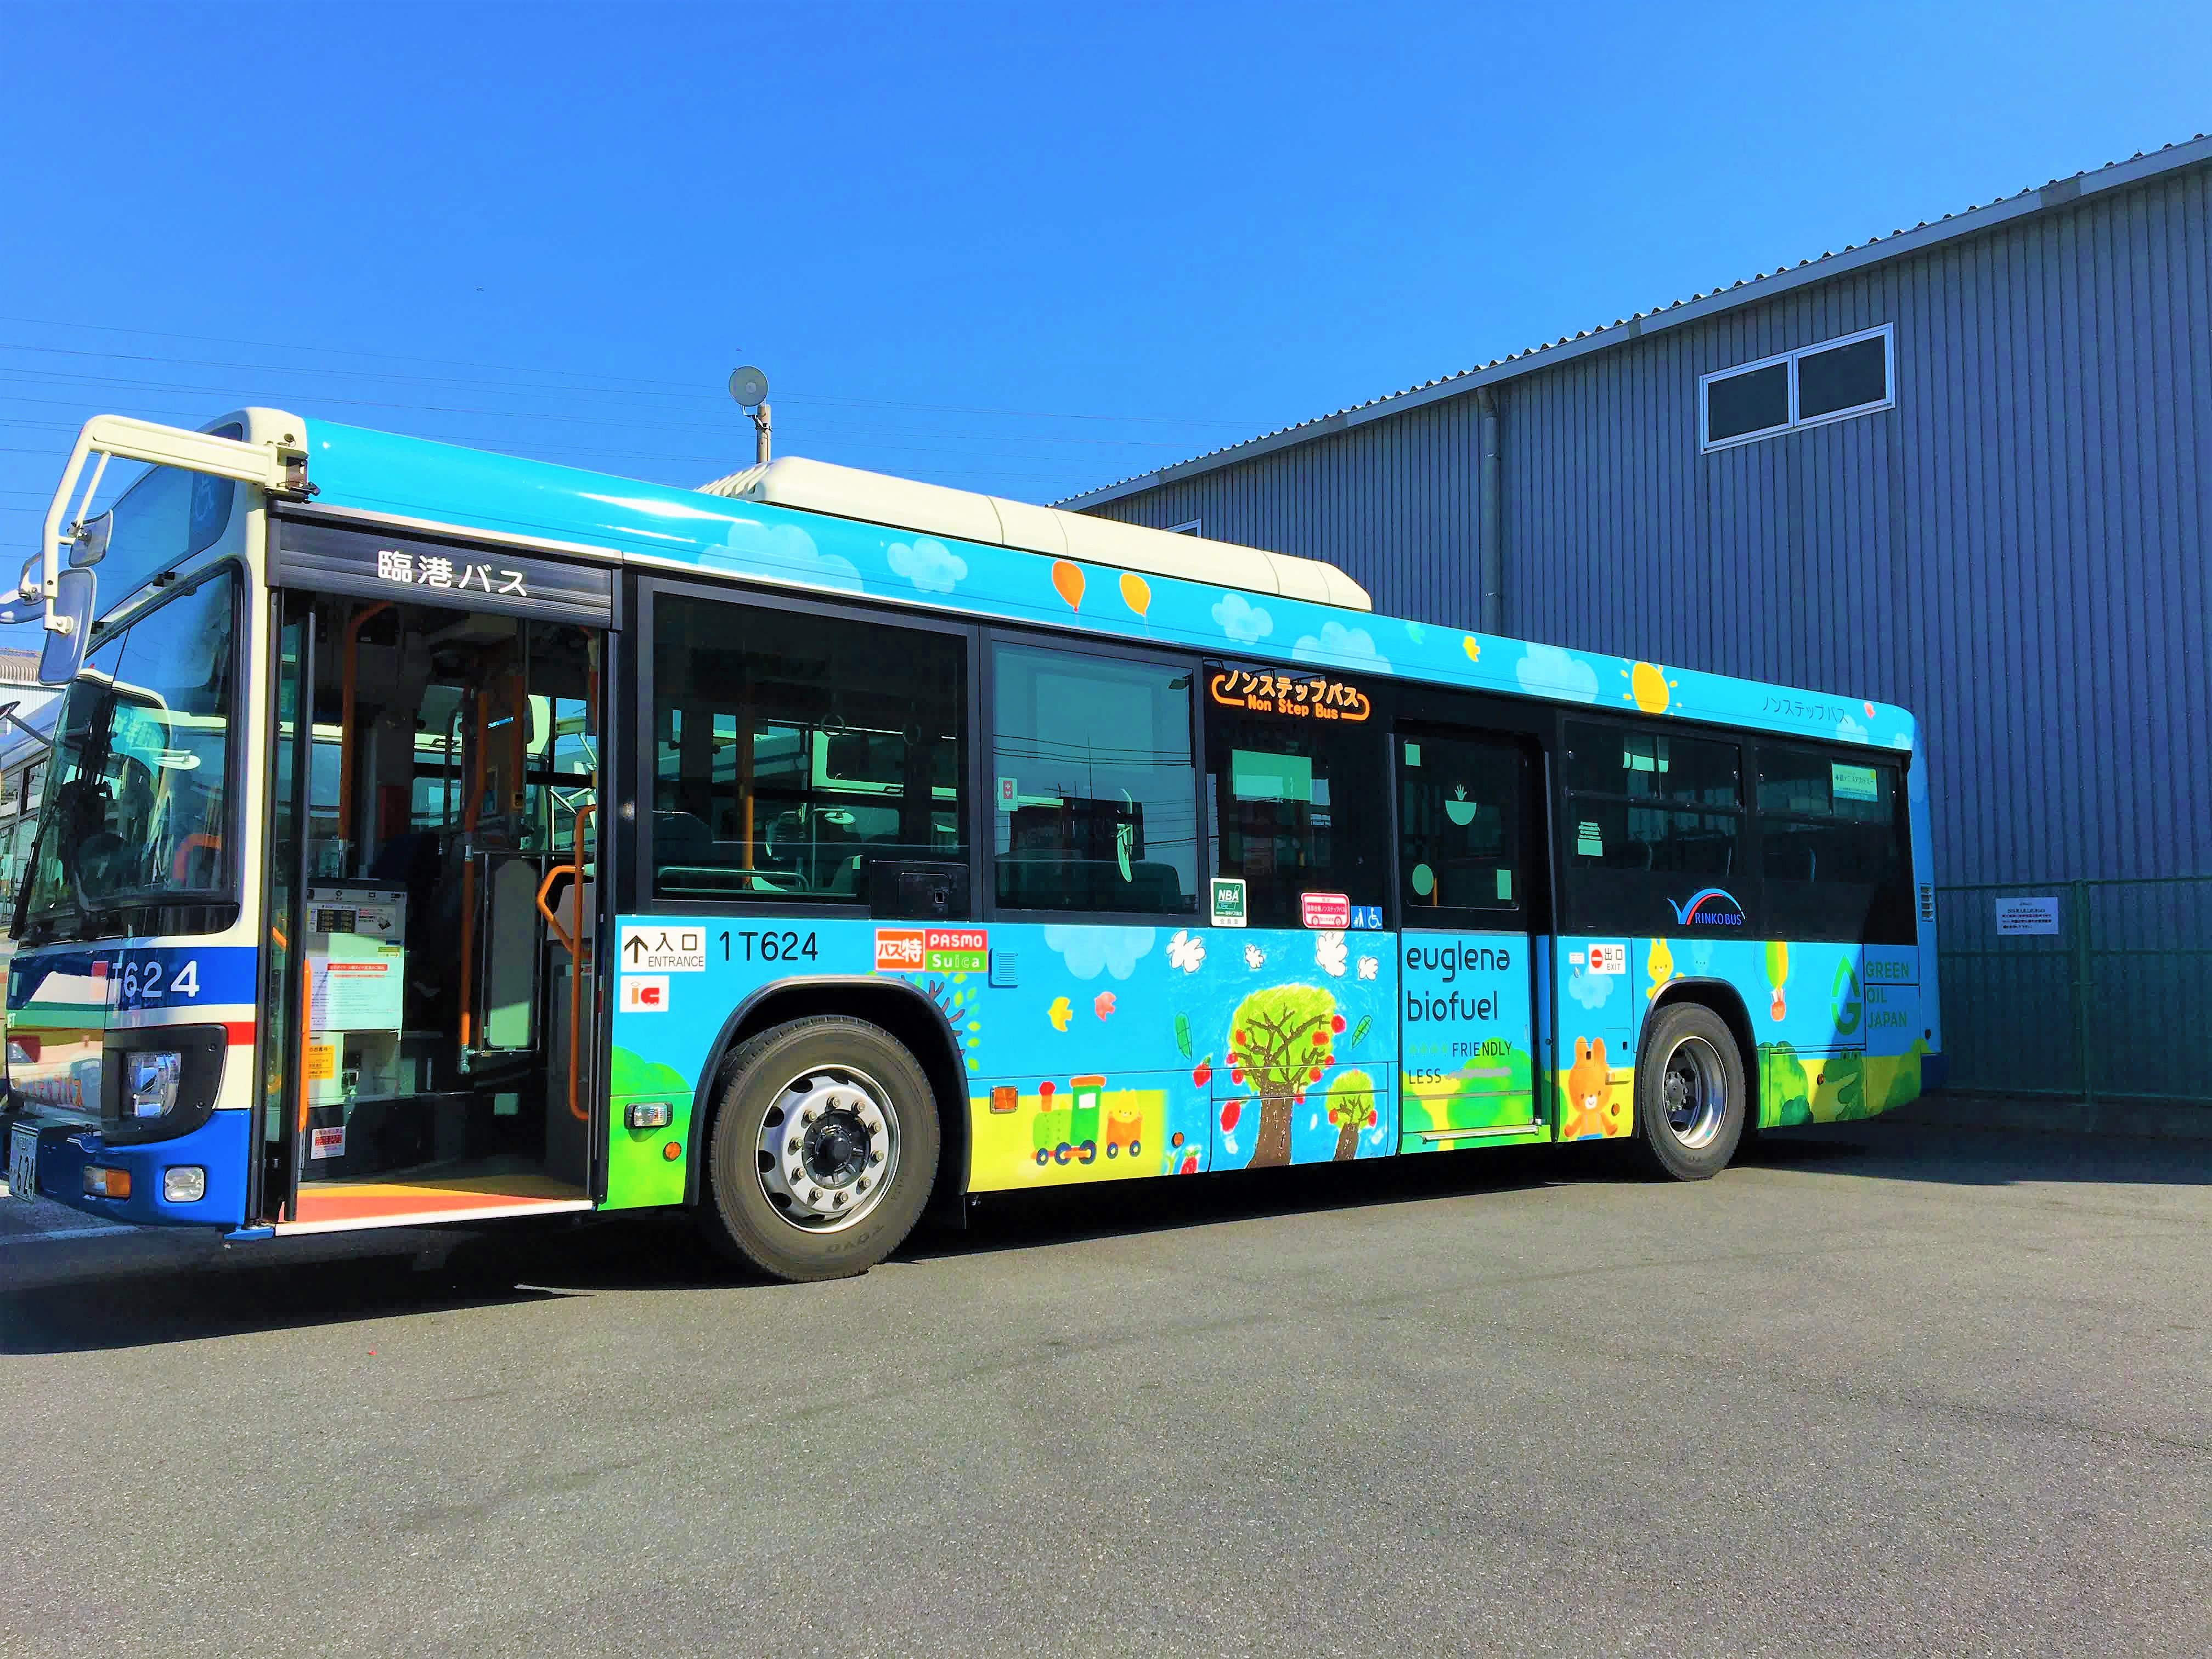 川崎鶴見臨港バス ユーグレナ社 横浜市内を走行するバスにユーグレナバイオディーゼル燃料を使用 株式会社ユーグレナのプレスリリース